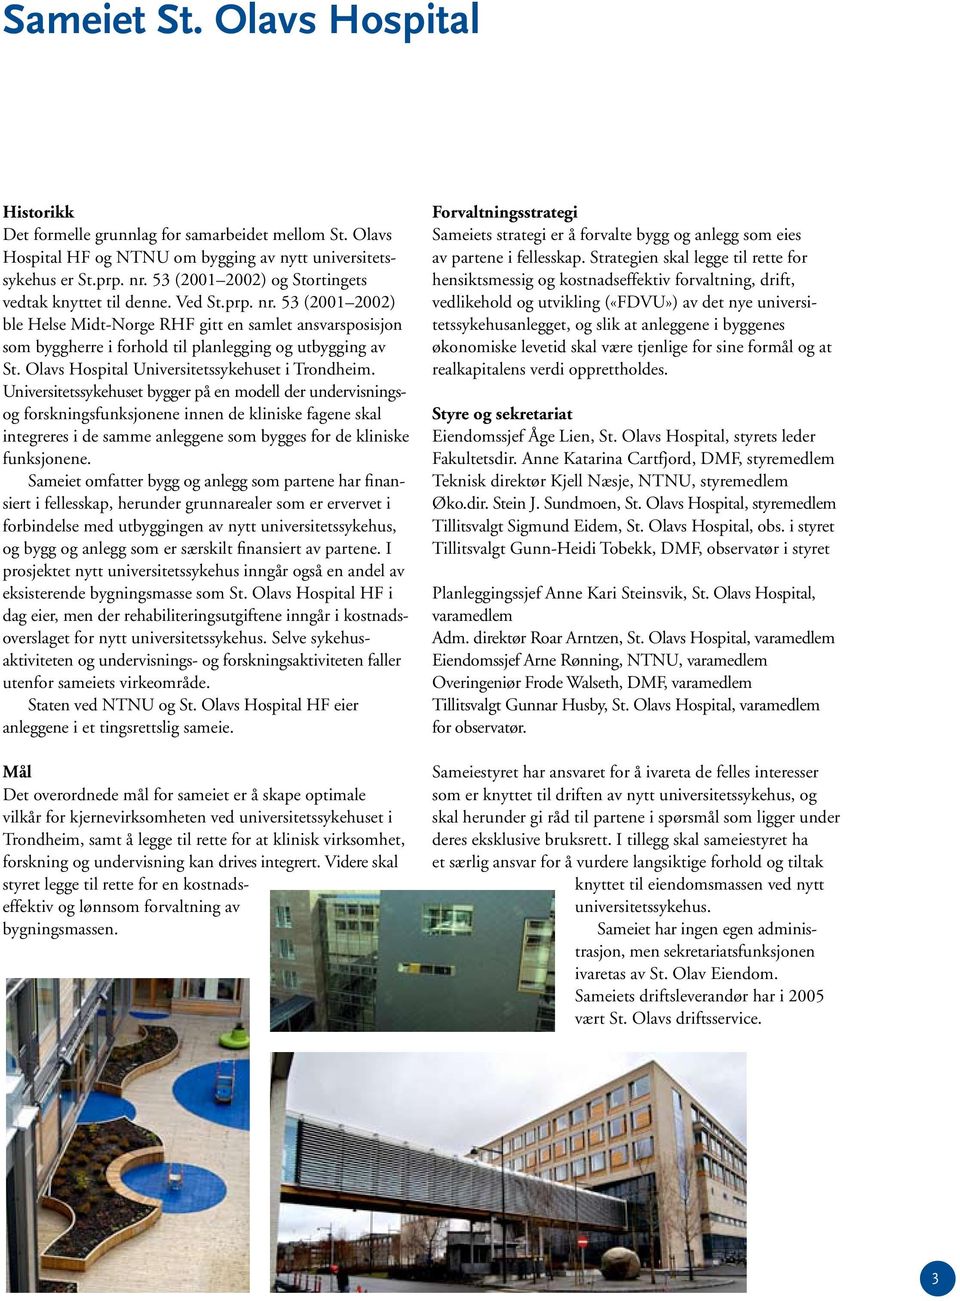 53 (2001 2002) ble Helse Midt-Norge RHF gitt en samlet ansvarsposisjon som byggherre i forhold til planlegging og utbygging av St. Olavs Hospital Universitetssykehuset i Trondheim.